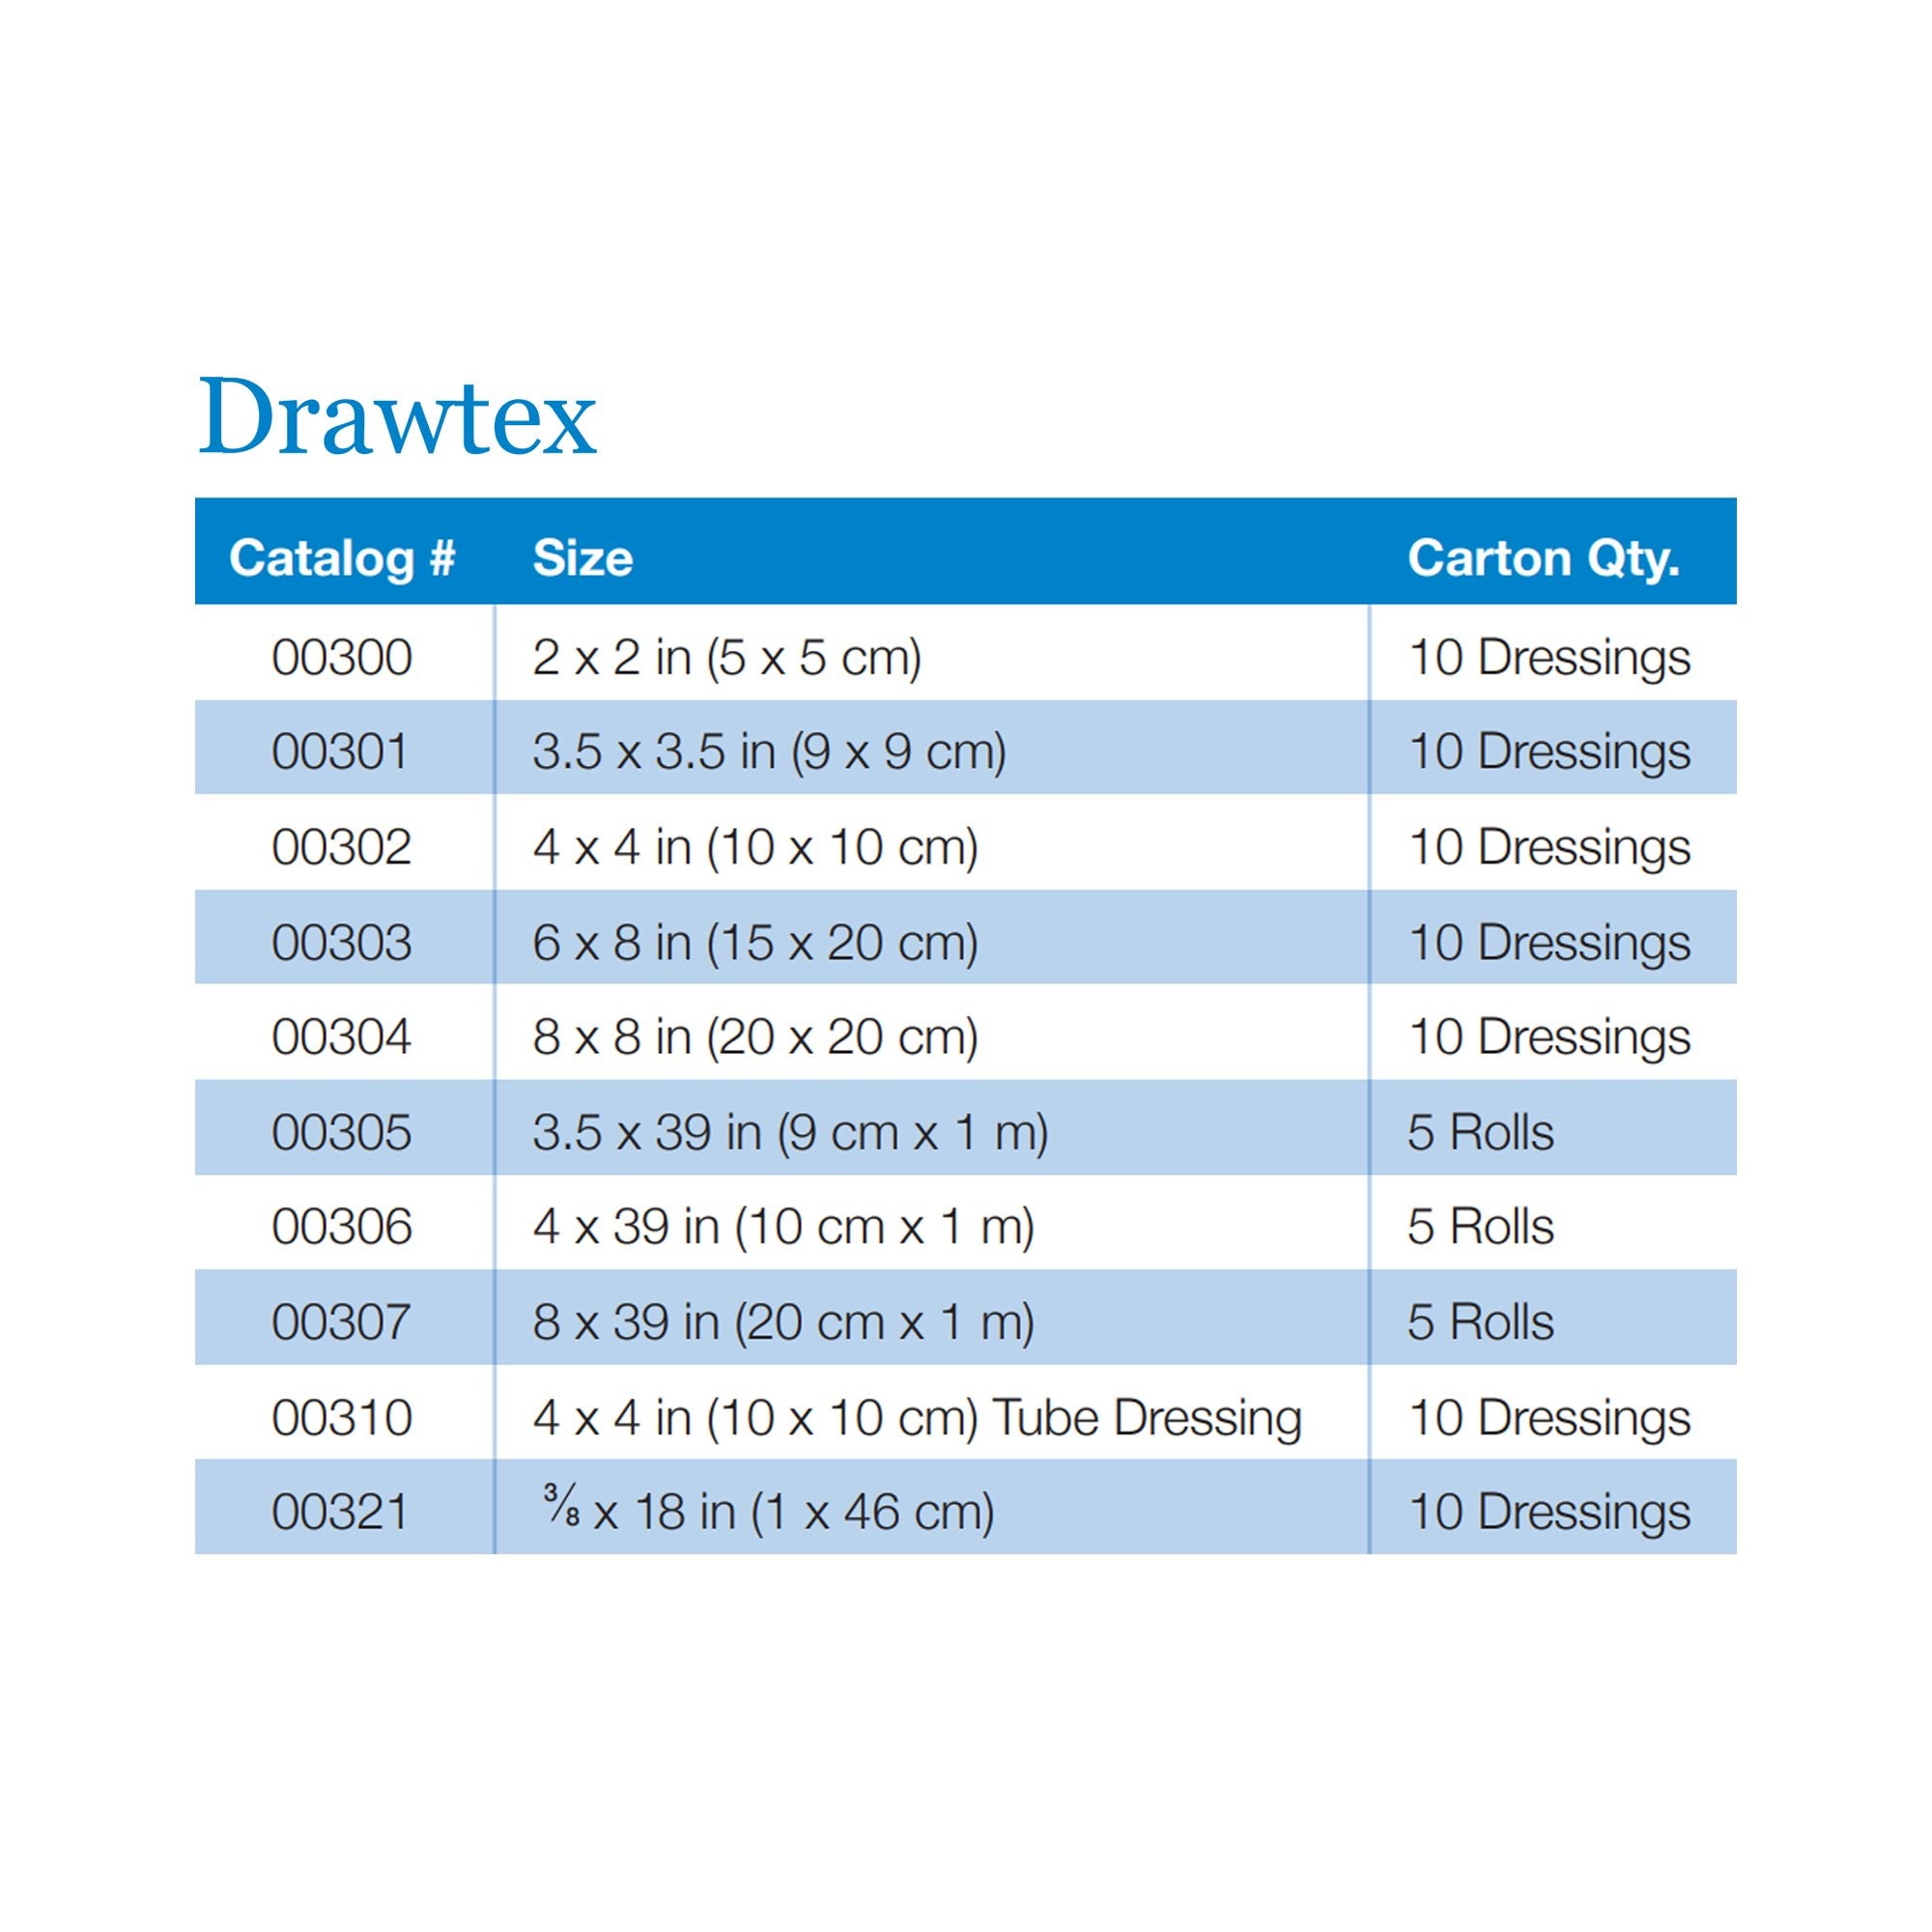 Hydroconductive Wound Dressing Drawtex® 3 X 30 Inch Roll